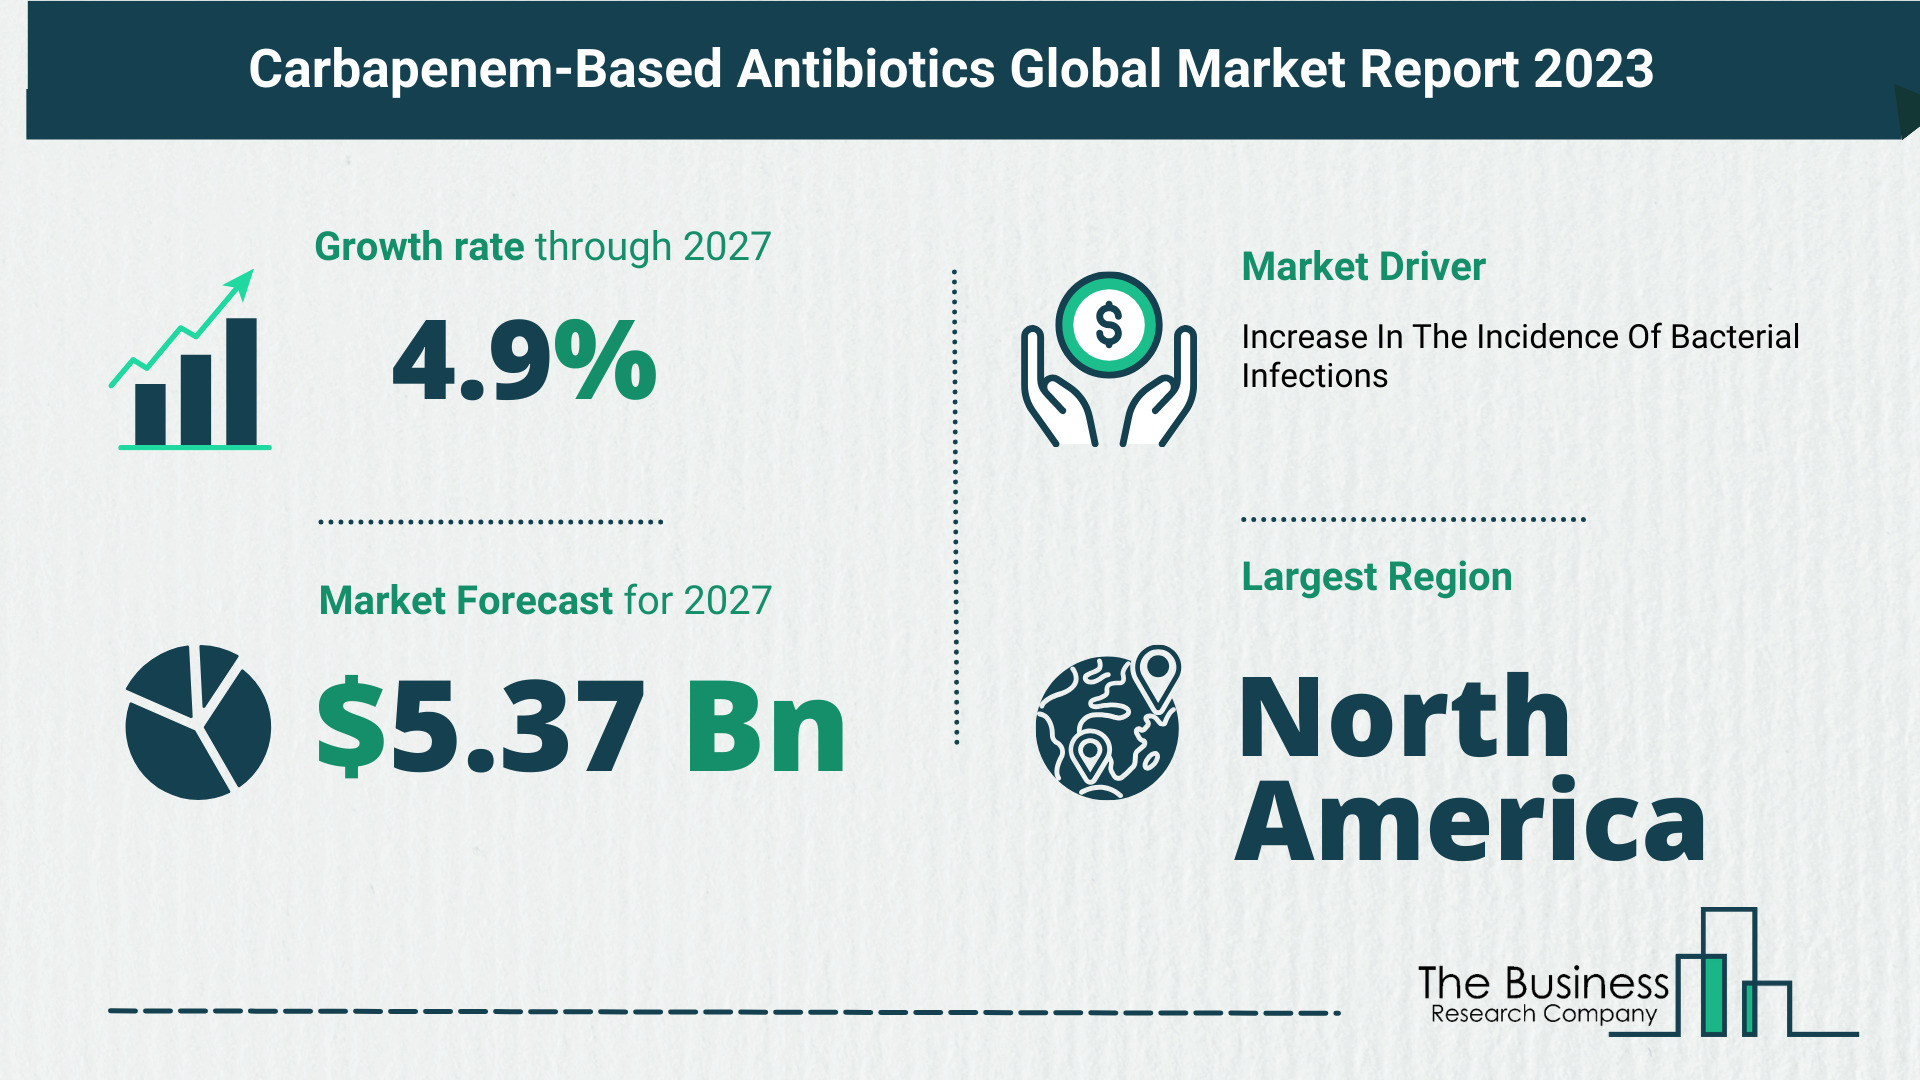 Key Takeaways From The Global Carbapenem-Based Antibiotics Market Forecast 2023